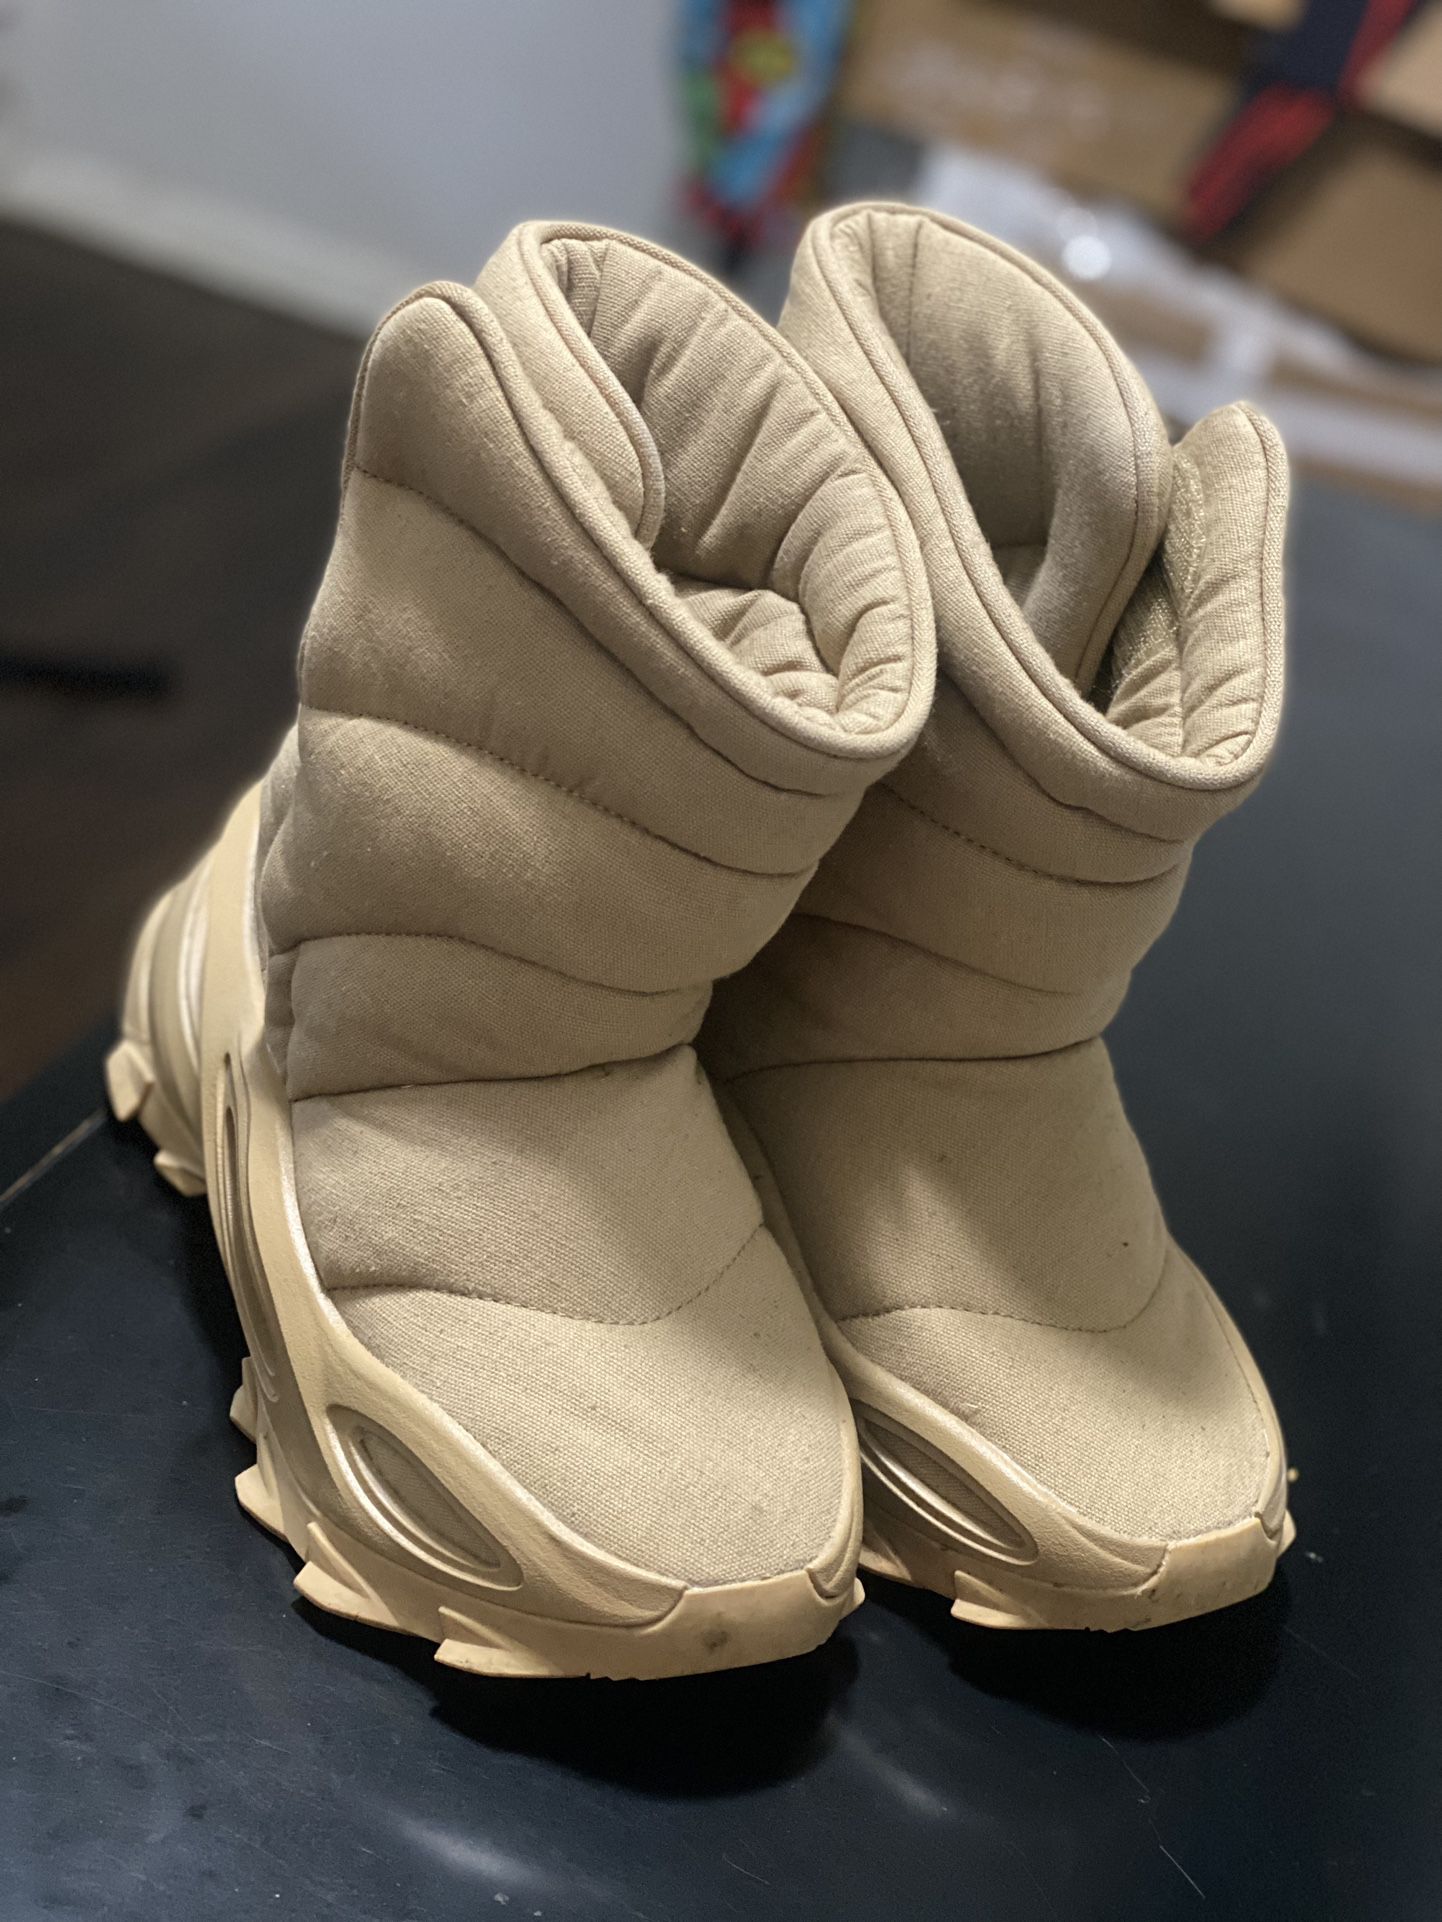 adidas Yeezy NSLTD Boot Khaki